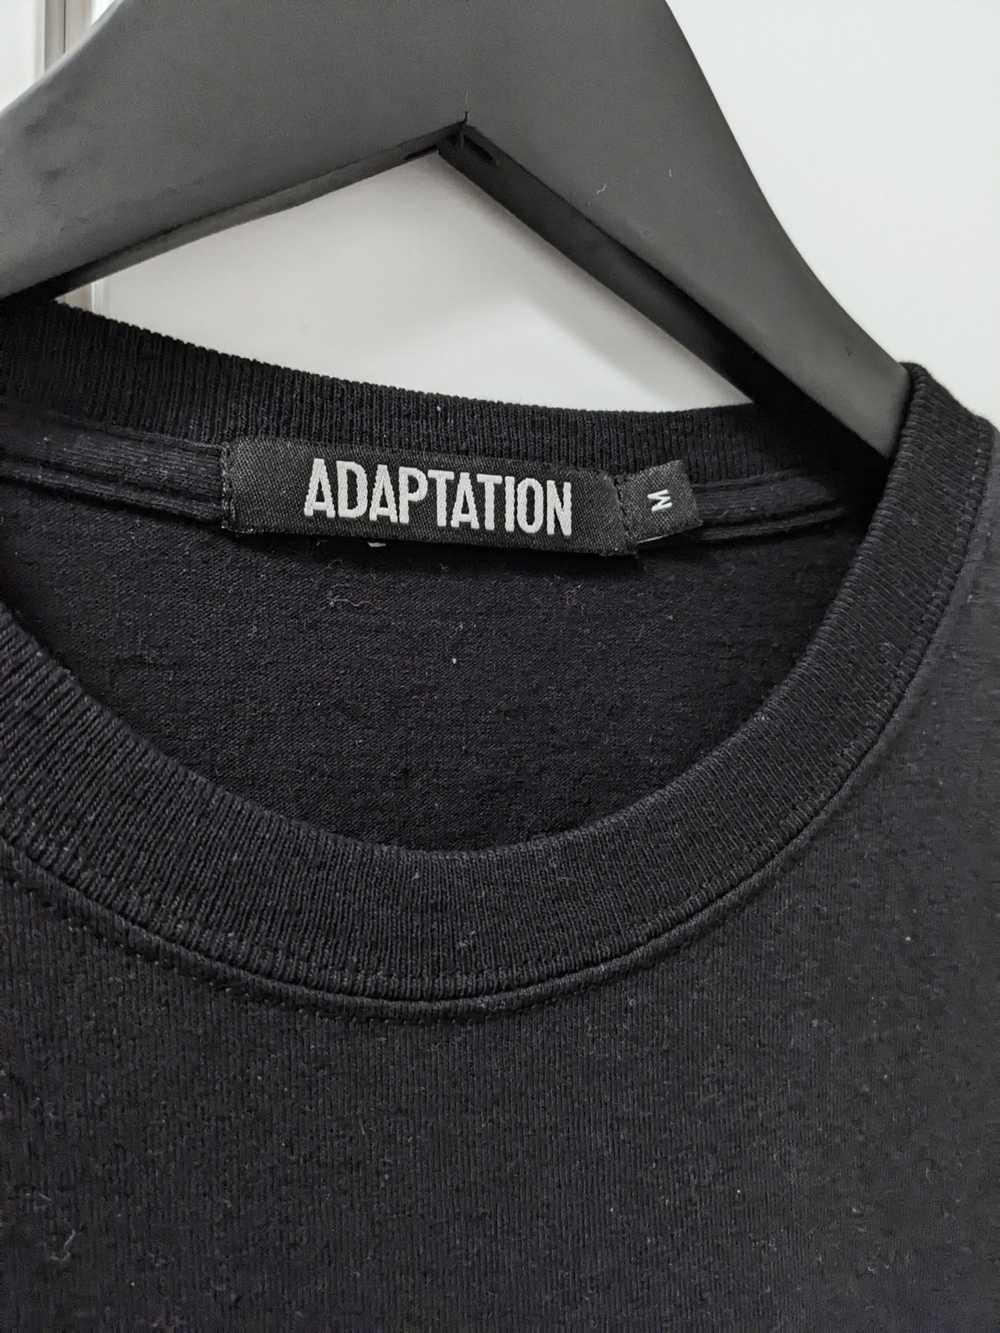 Adaptation Adaptation LA print t-shirt - image 3